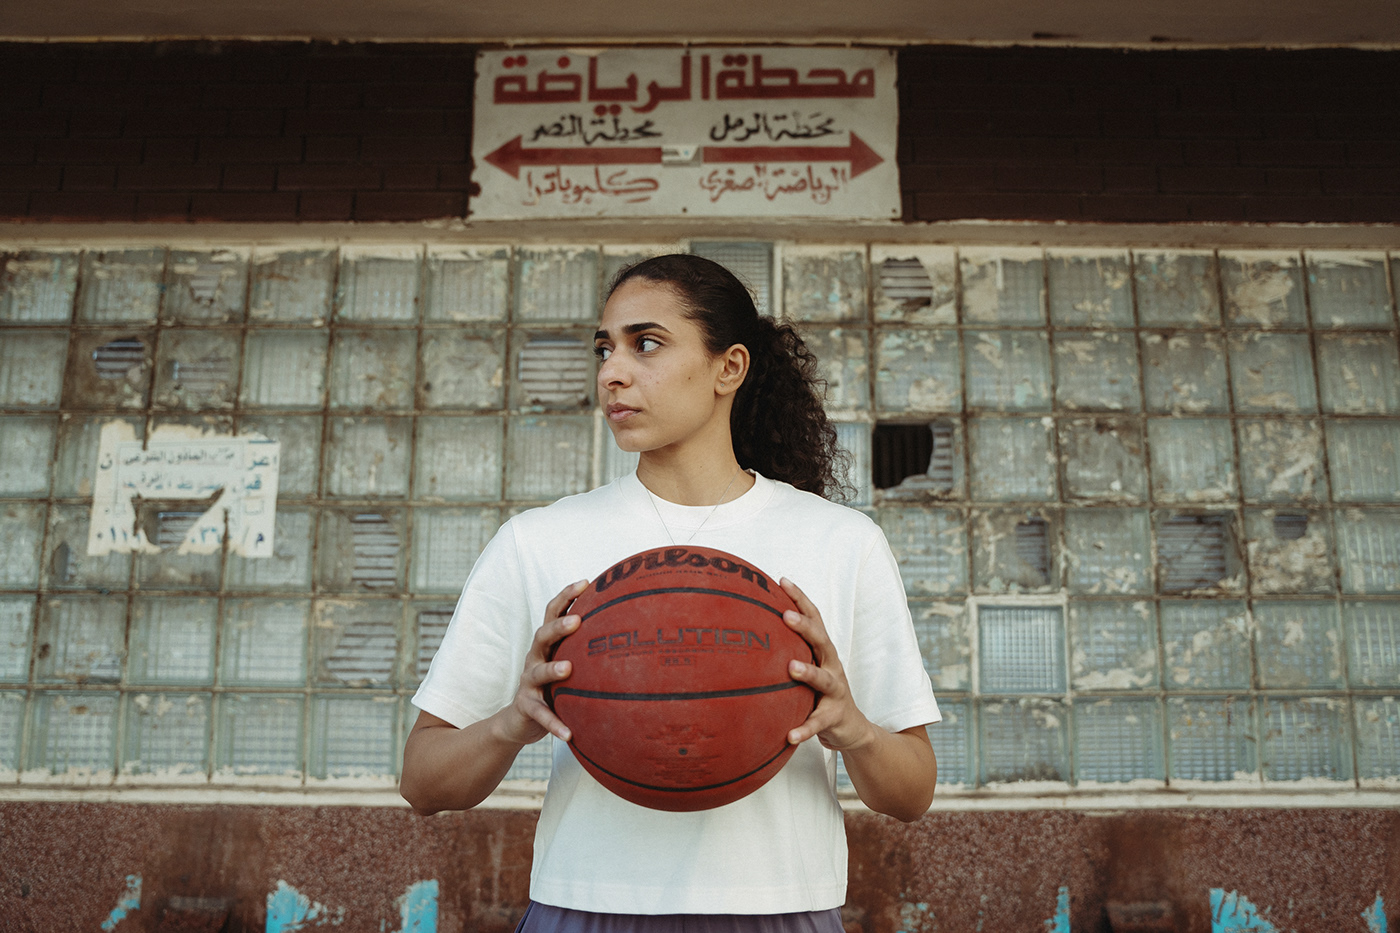 adidas alexanderia basketball egypt jordan NBA Nike sports sports photography WNBA